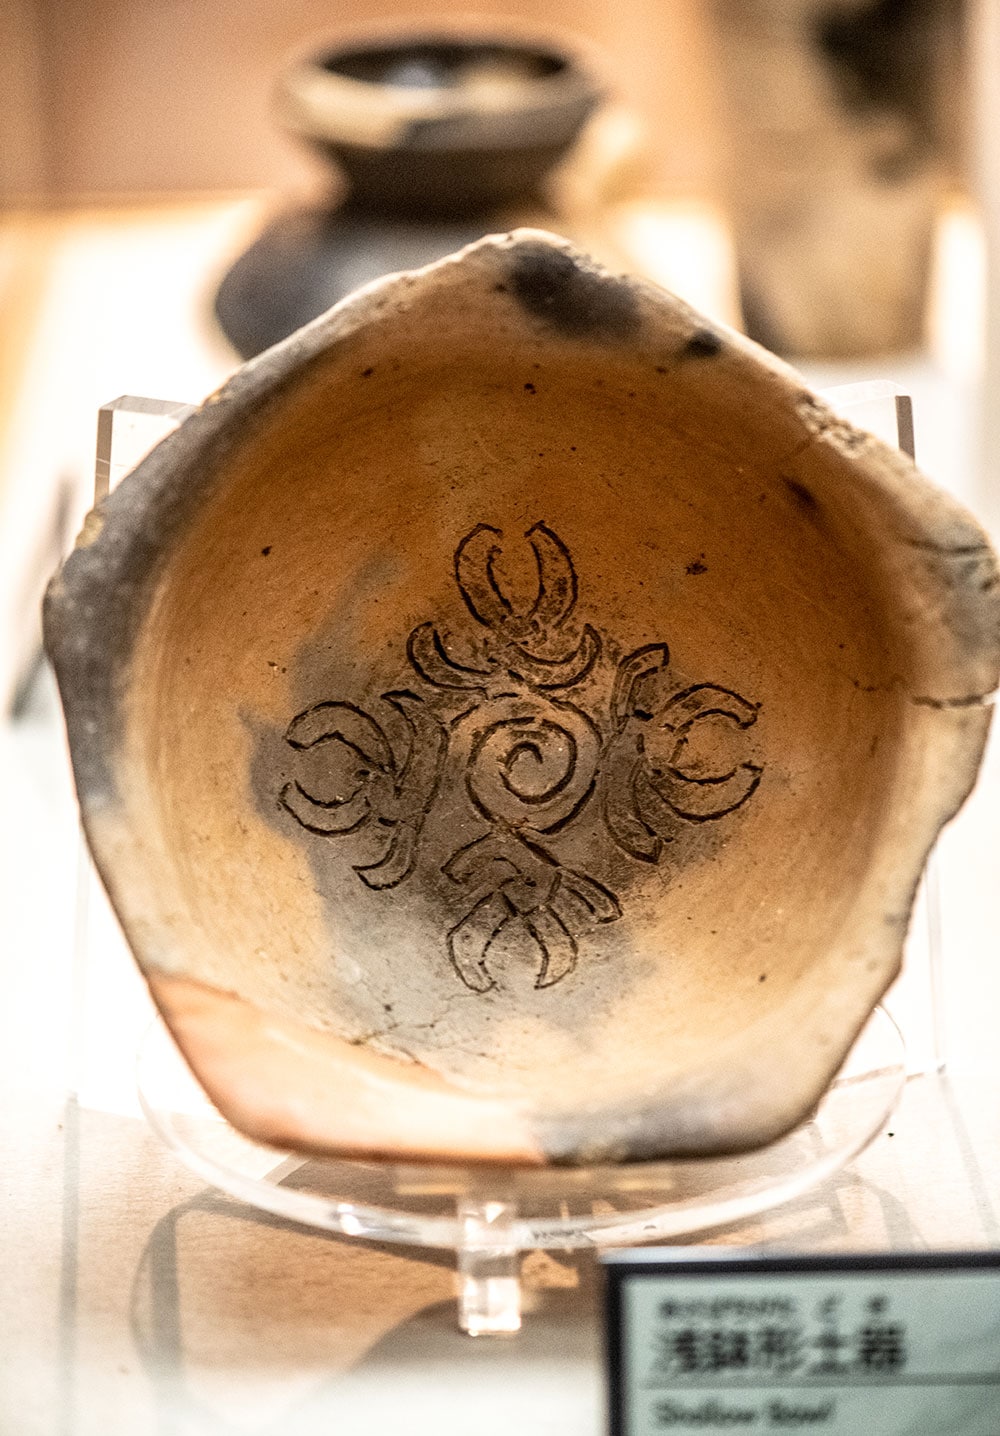 珍しい五角形の浅鉢形土器。中には花弁状文(蟹の爪のような文様)が描かれている。縄文時代後期は多種多様な土器が作られていた。